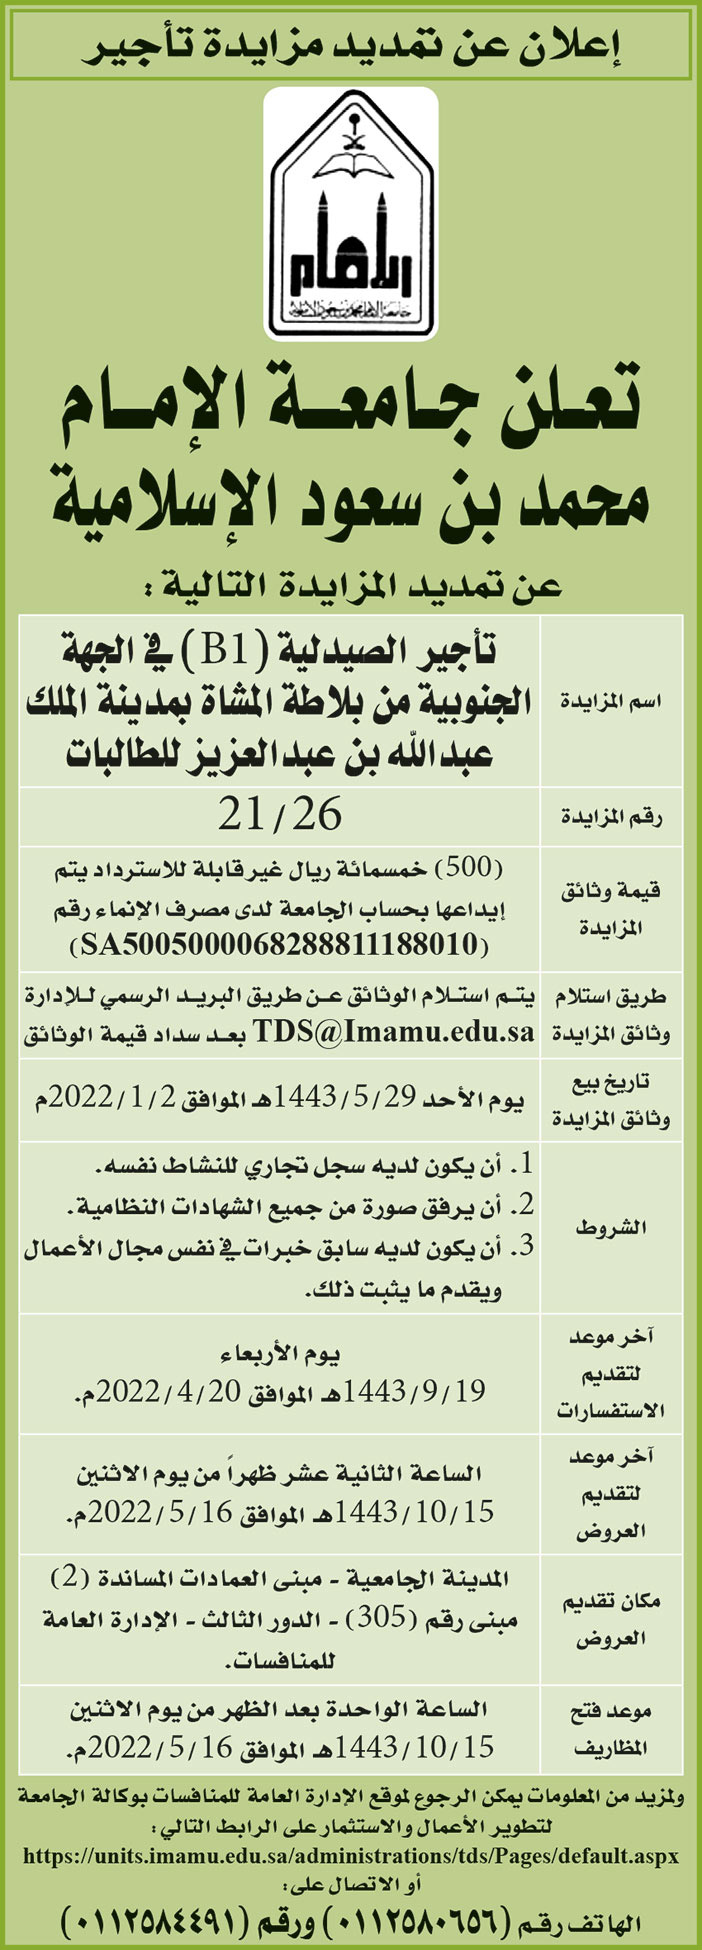 جامعة الإمام محمد بن سعود الإسلامية تمدد مزايدة تأجير الصيدلية (B1) في الجهة الجنوبية من بلاطة المشاة بمدينة الملك عبدالله بن عبدالعزيز للطالبات 